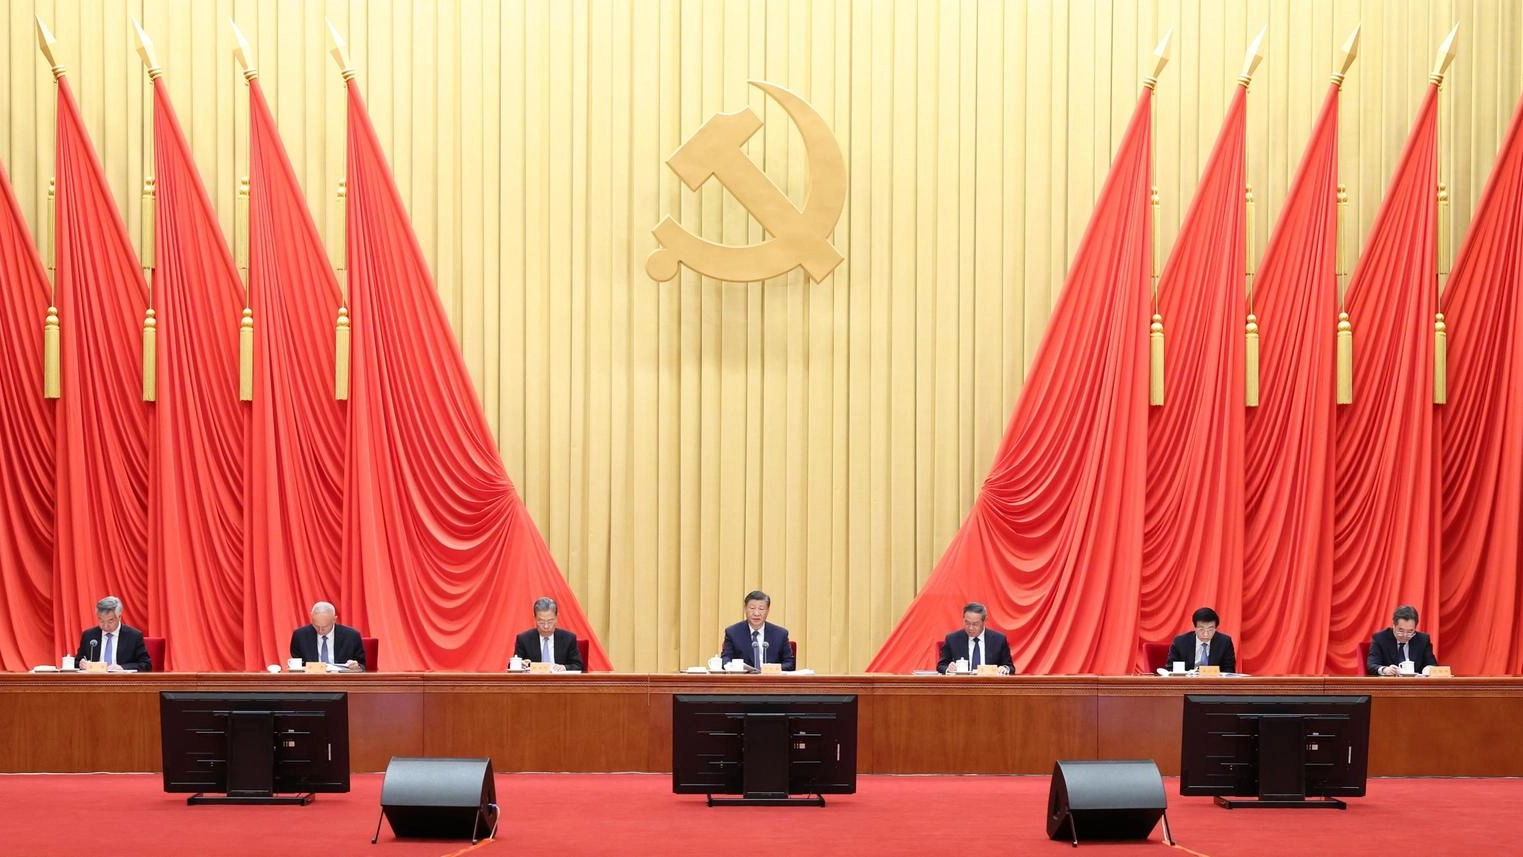 Cina: 'Iscritti al Partito comunista sono quasi 100 milioni'